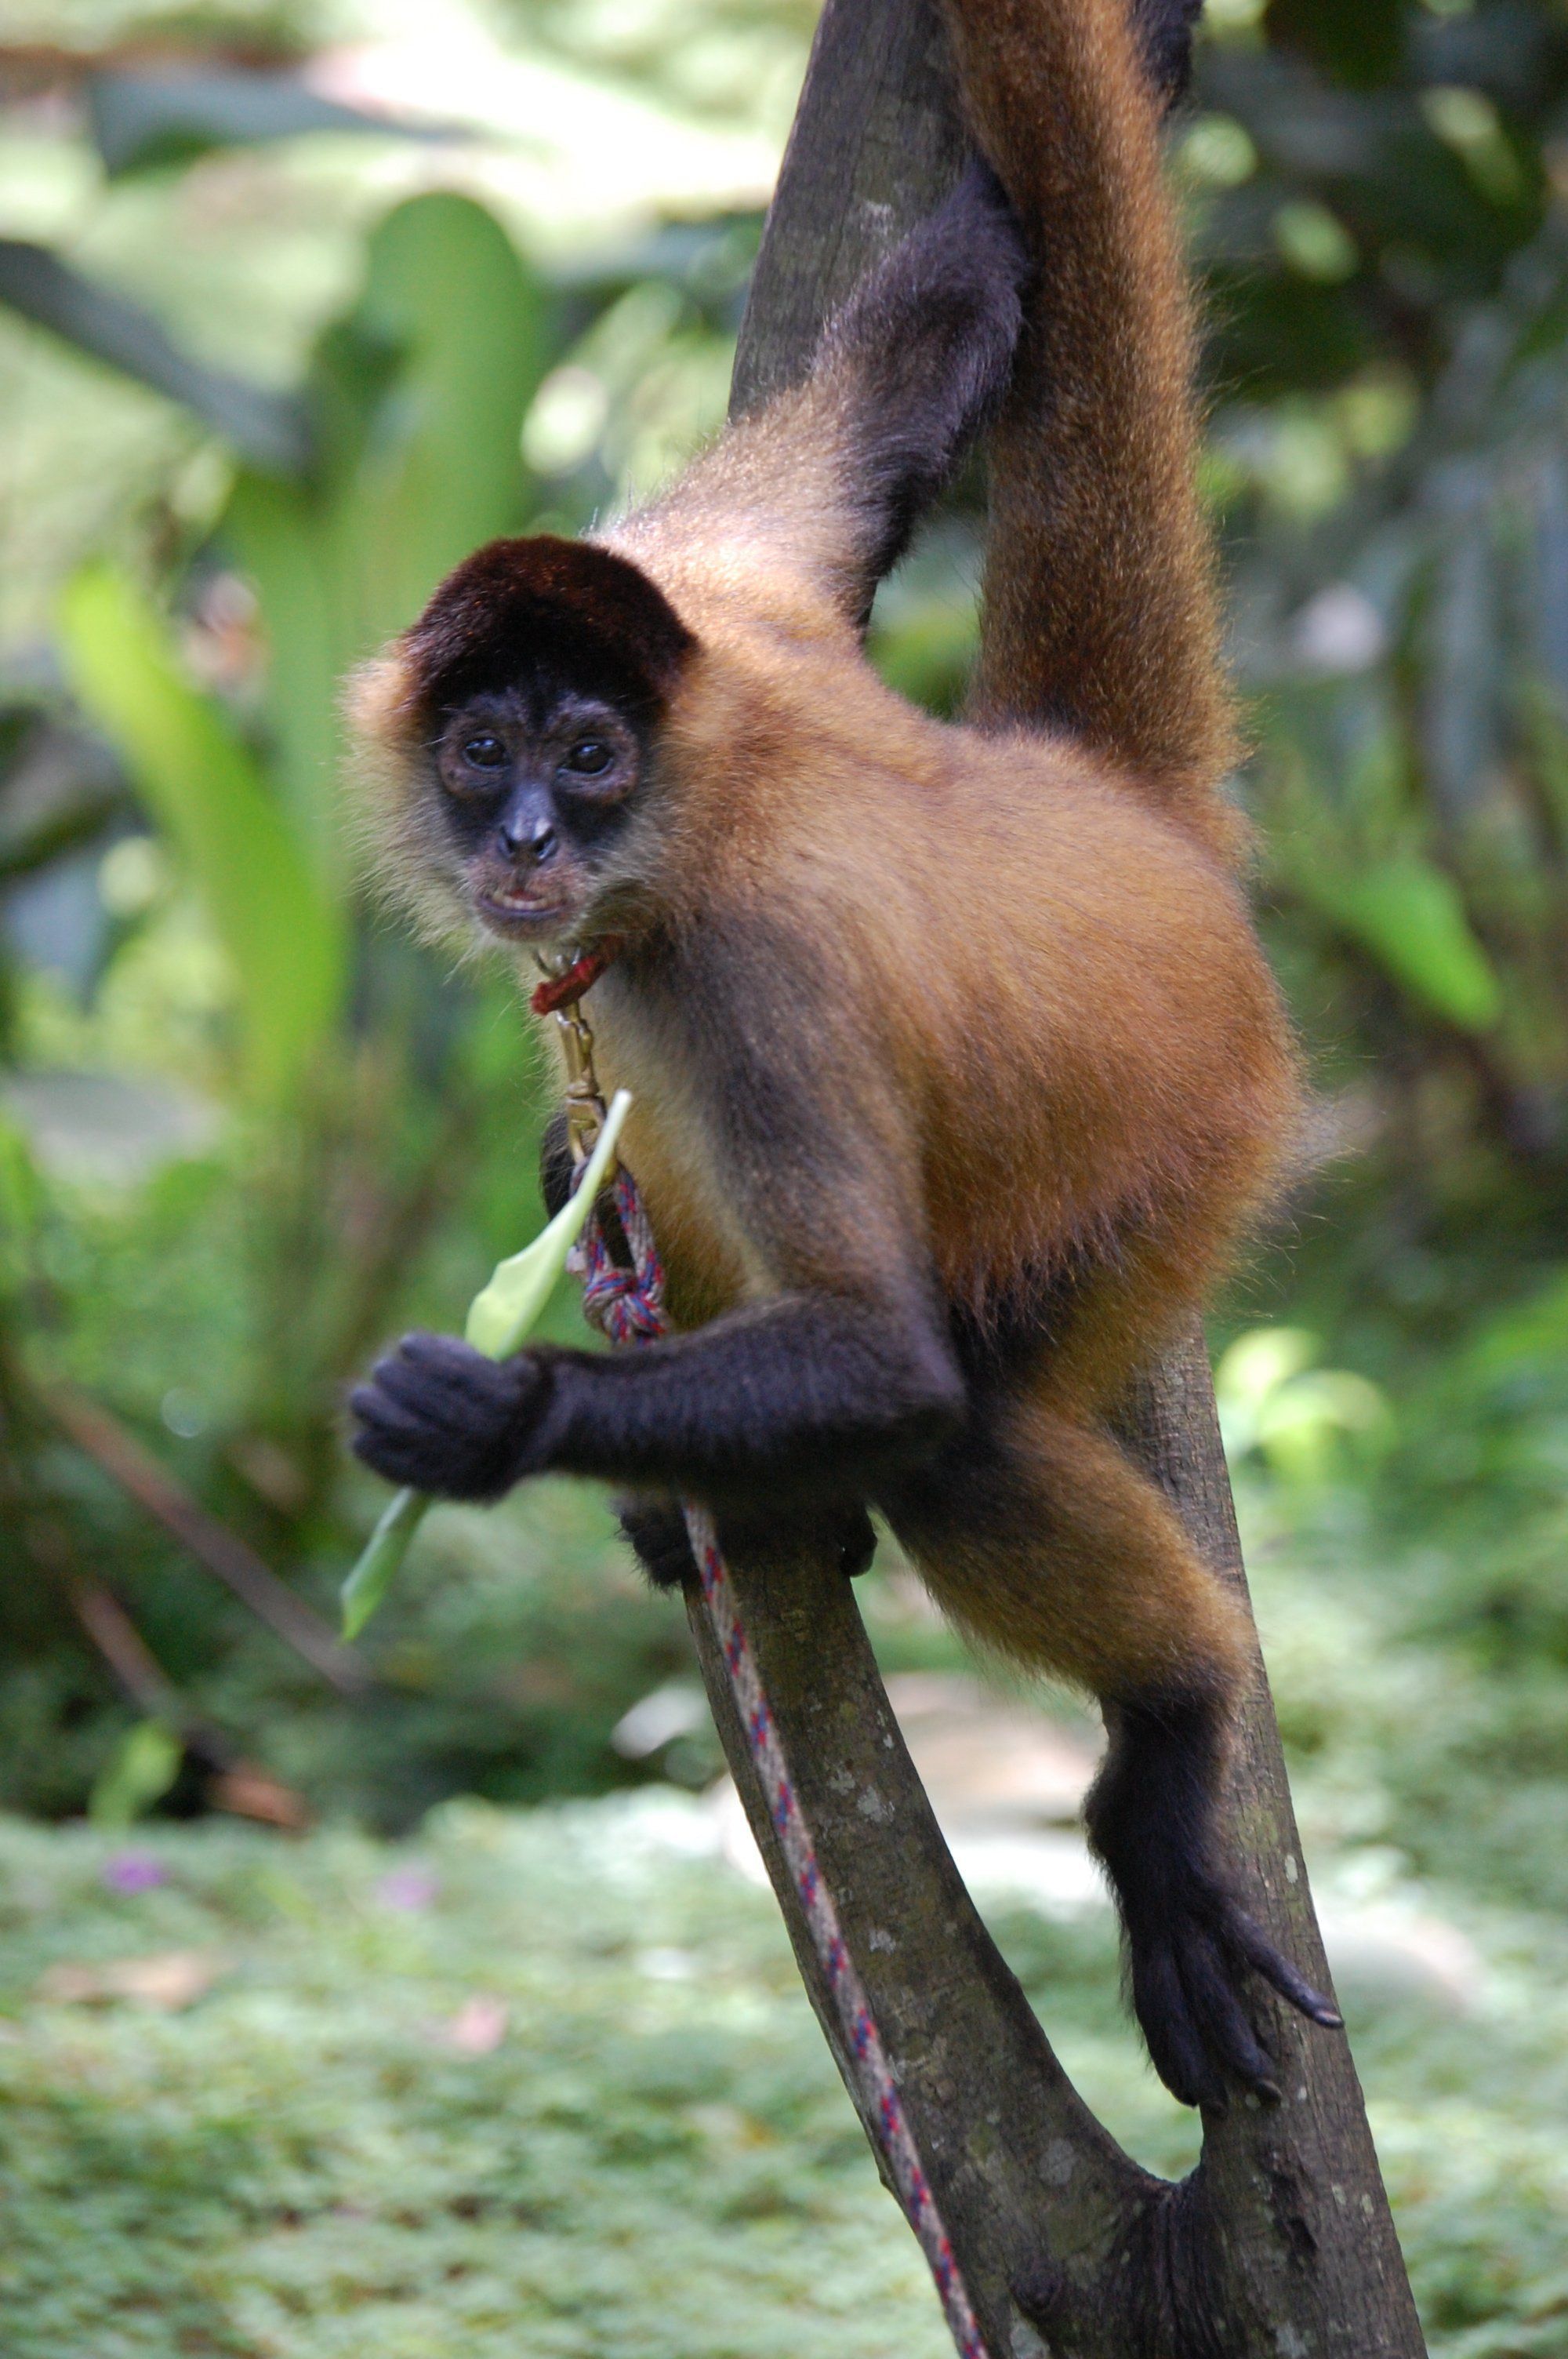 Sex determination of a spider monkey photo